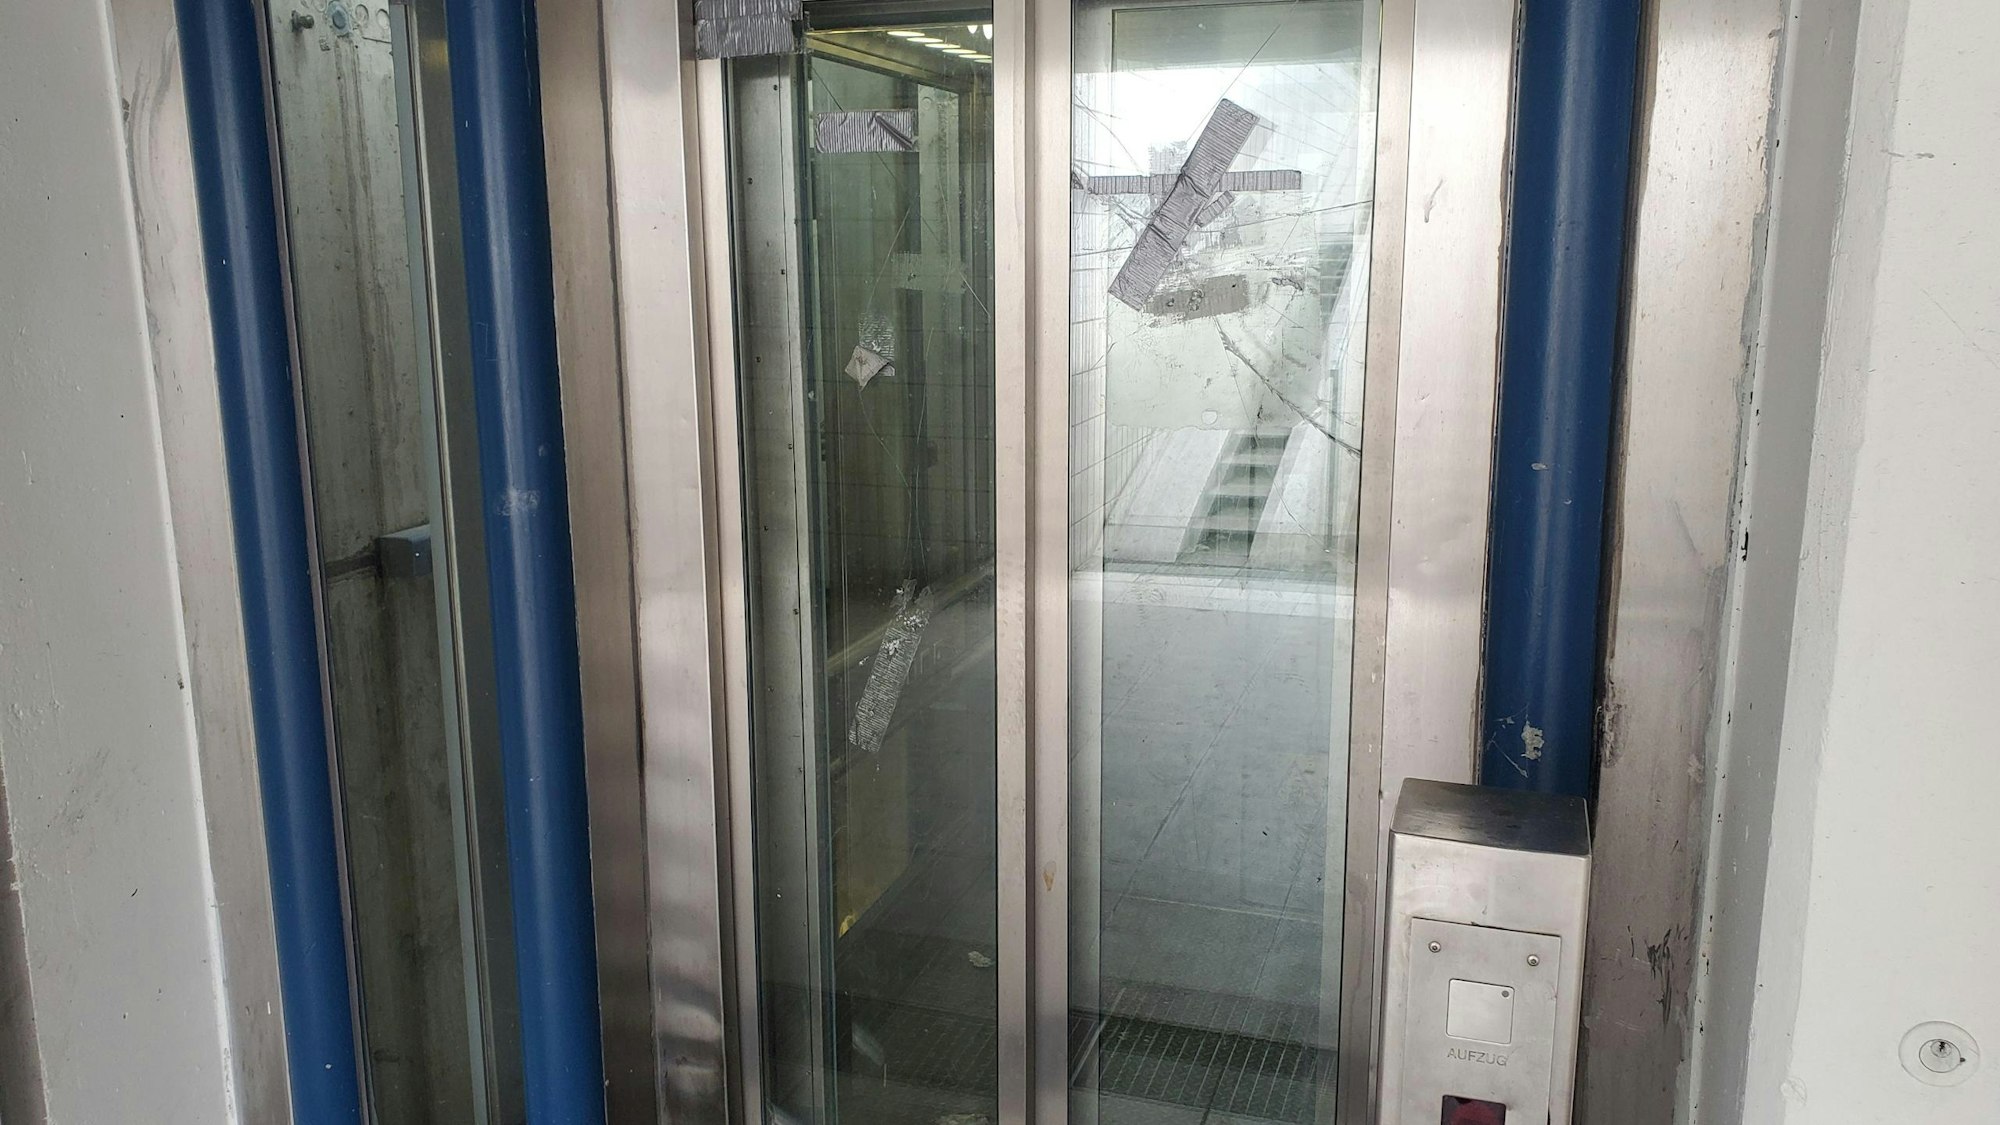 Kaputter Aufzug der Bahnstation Köln-Worringen mit eingeschlagenen Scheiben.